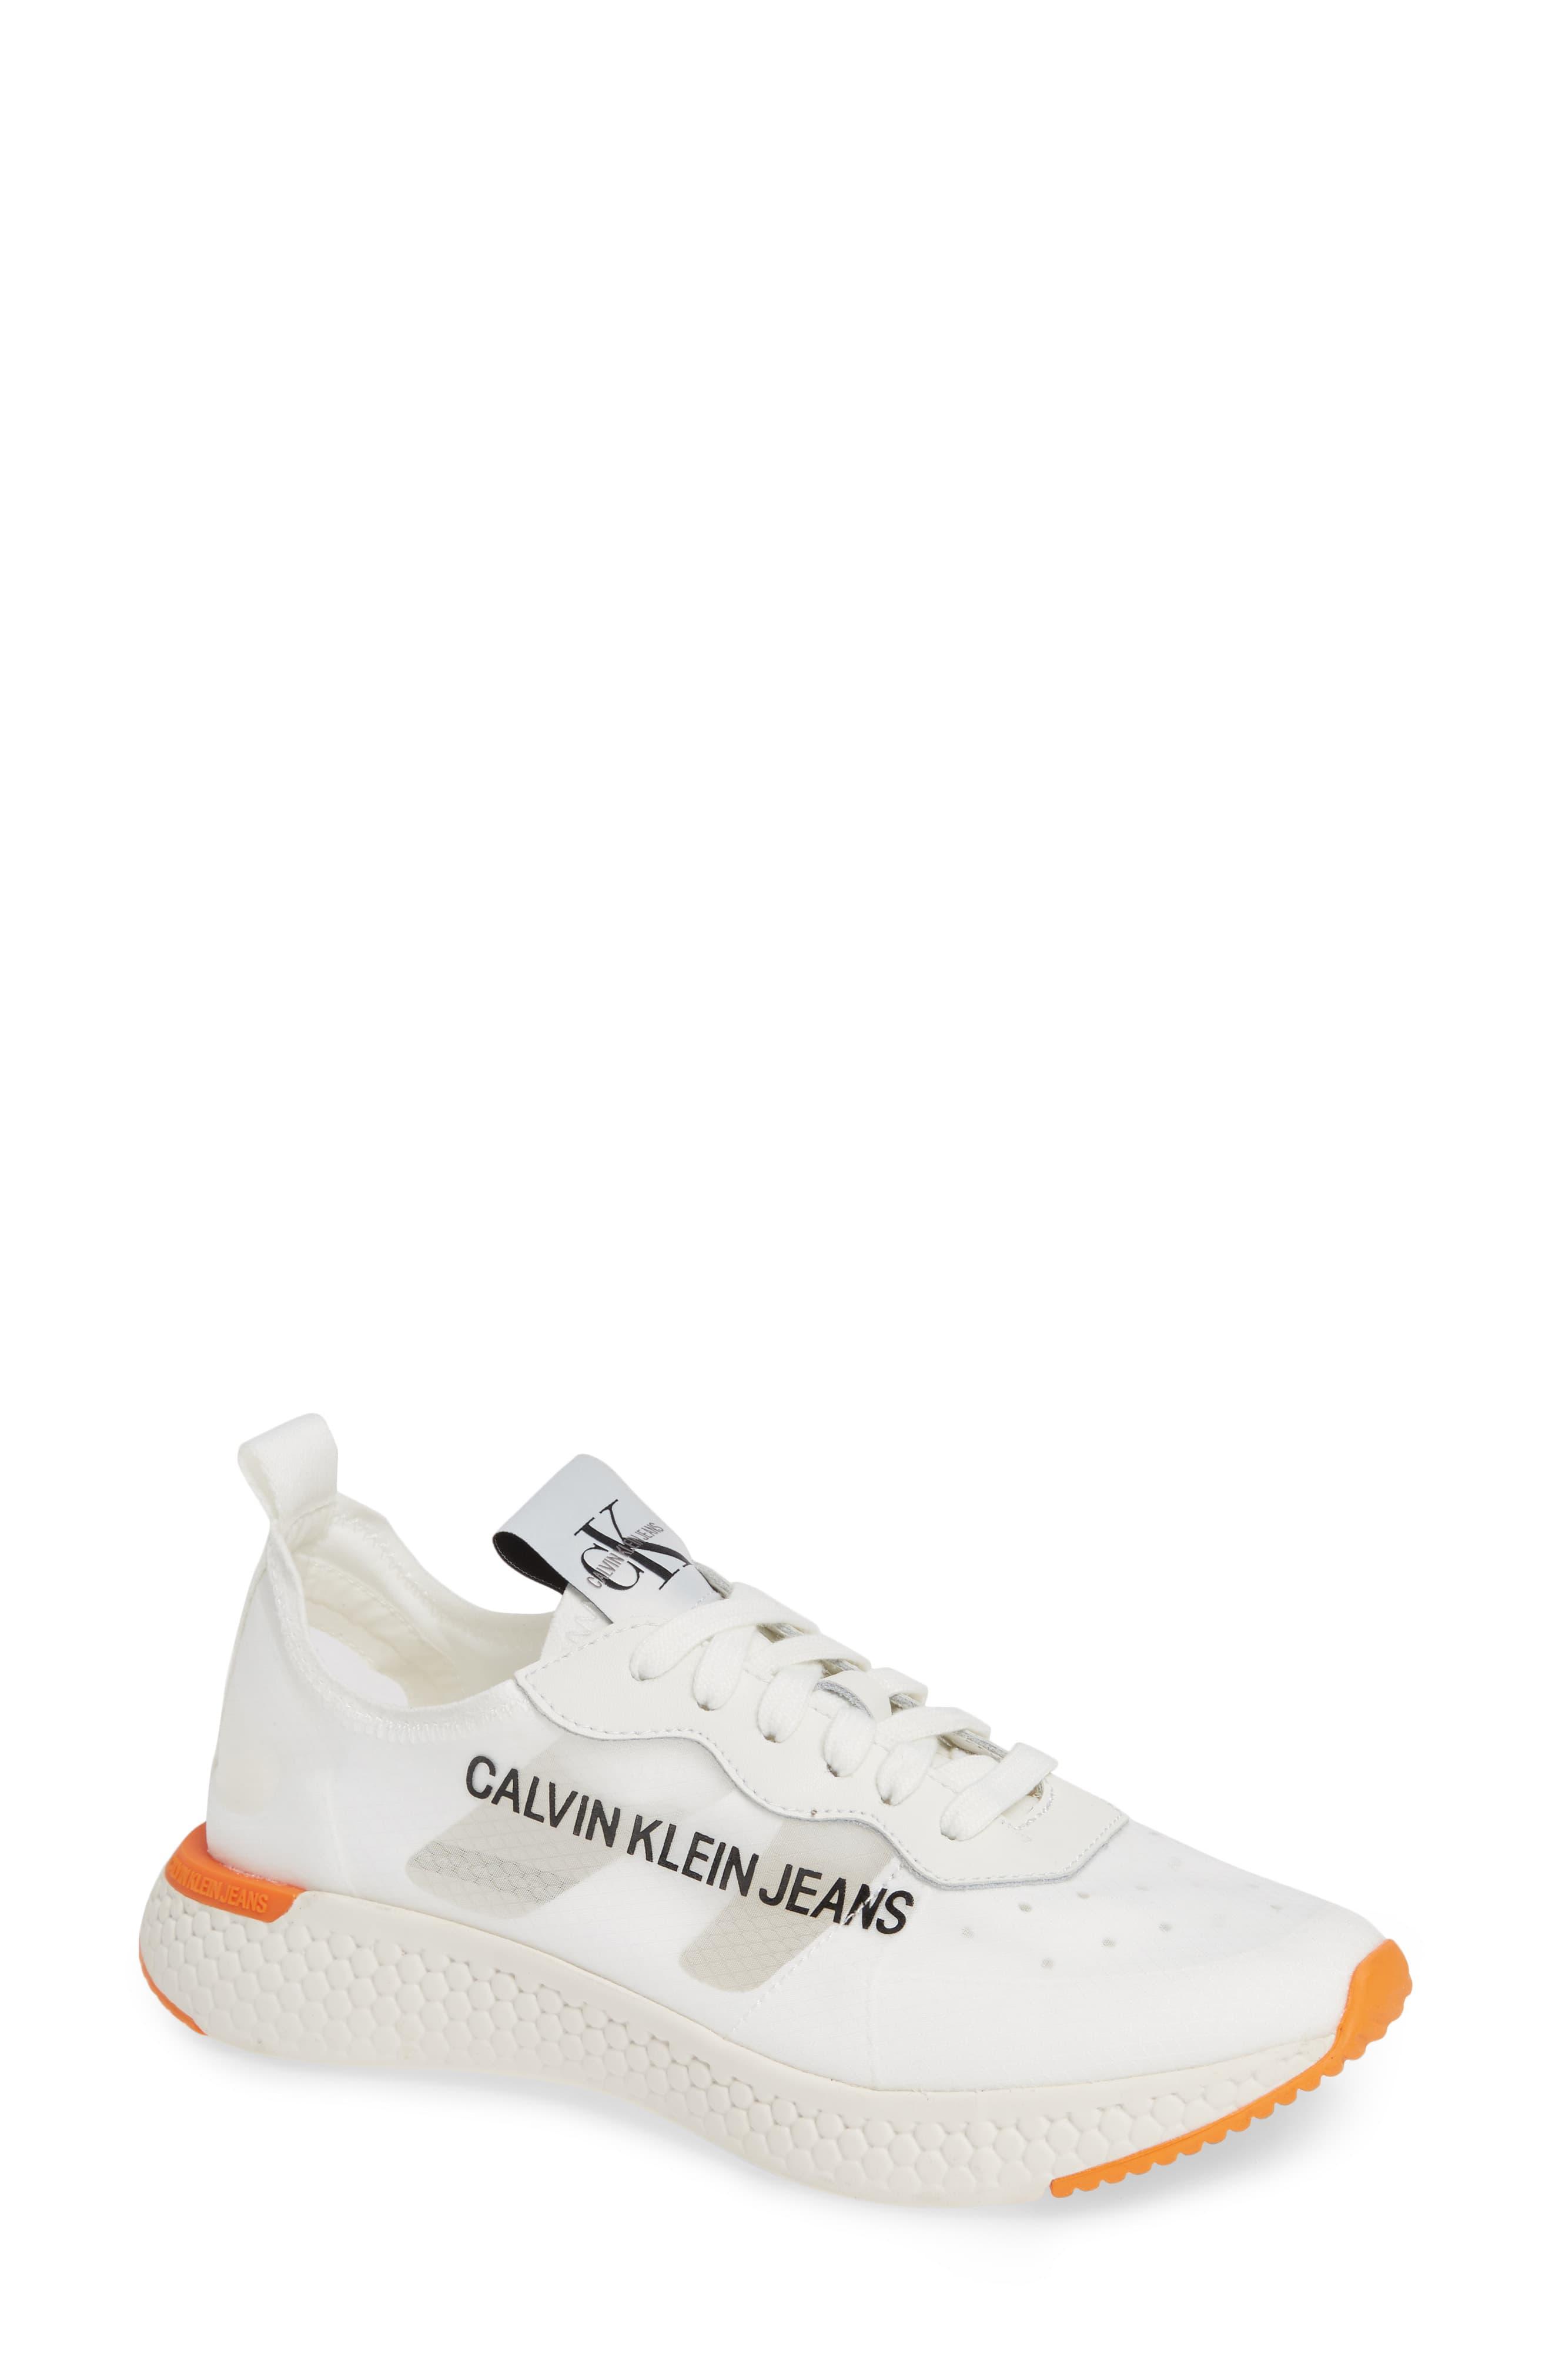 Calvin Klein Alexia Logo Sneaker in Bright White/ Suede (White) - Lyst